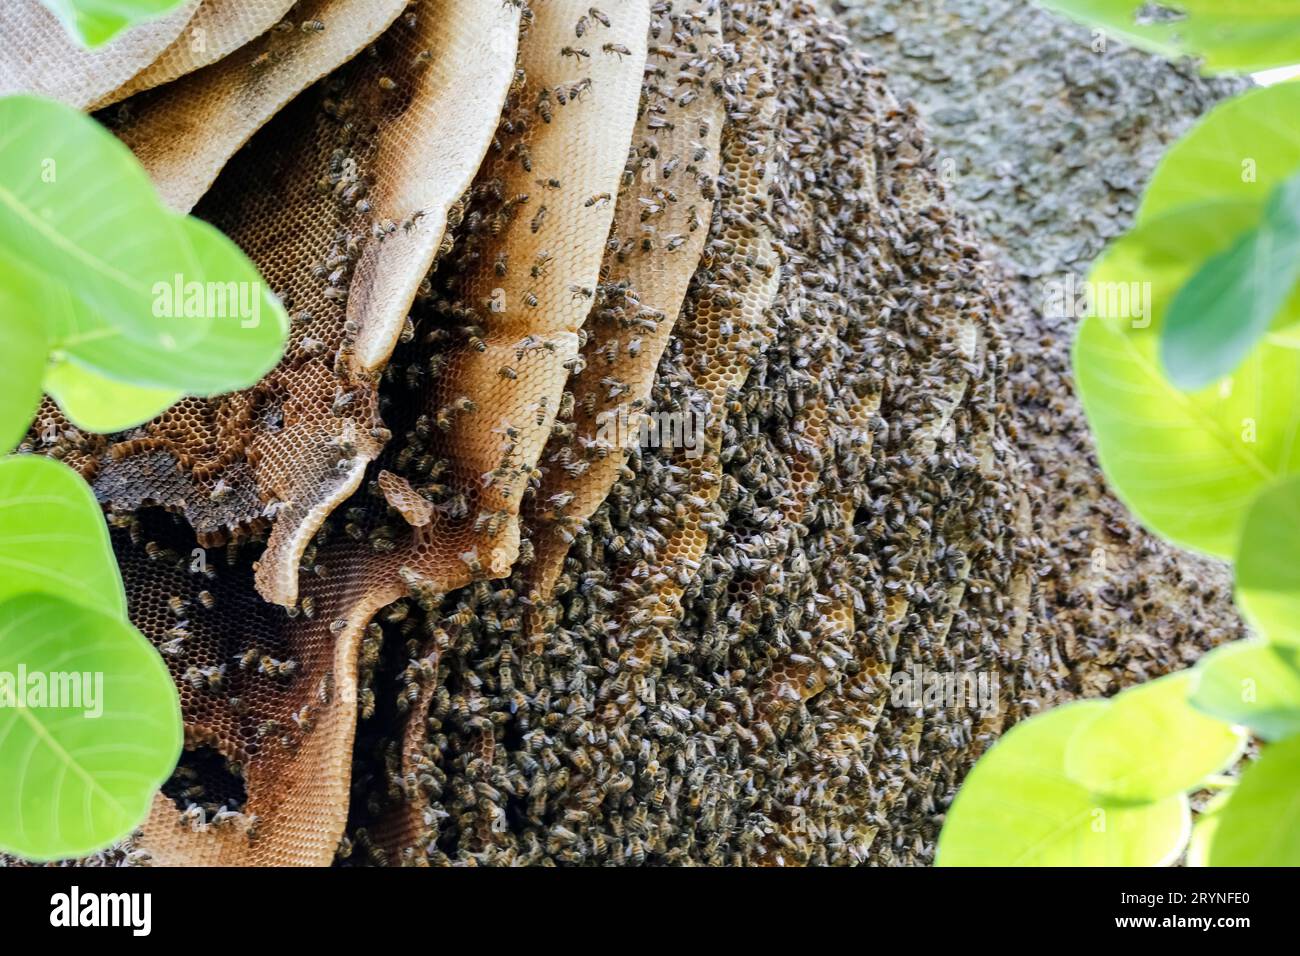 Primo piano di un nido di api selvatiche in un albero con foglie verdi, Pantanal Wetlands, Mato Grosso, Brasile Foto Stock